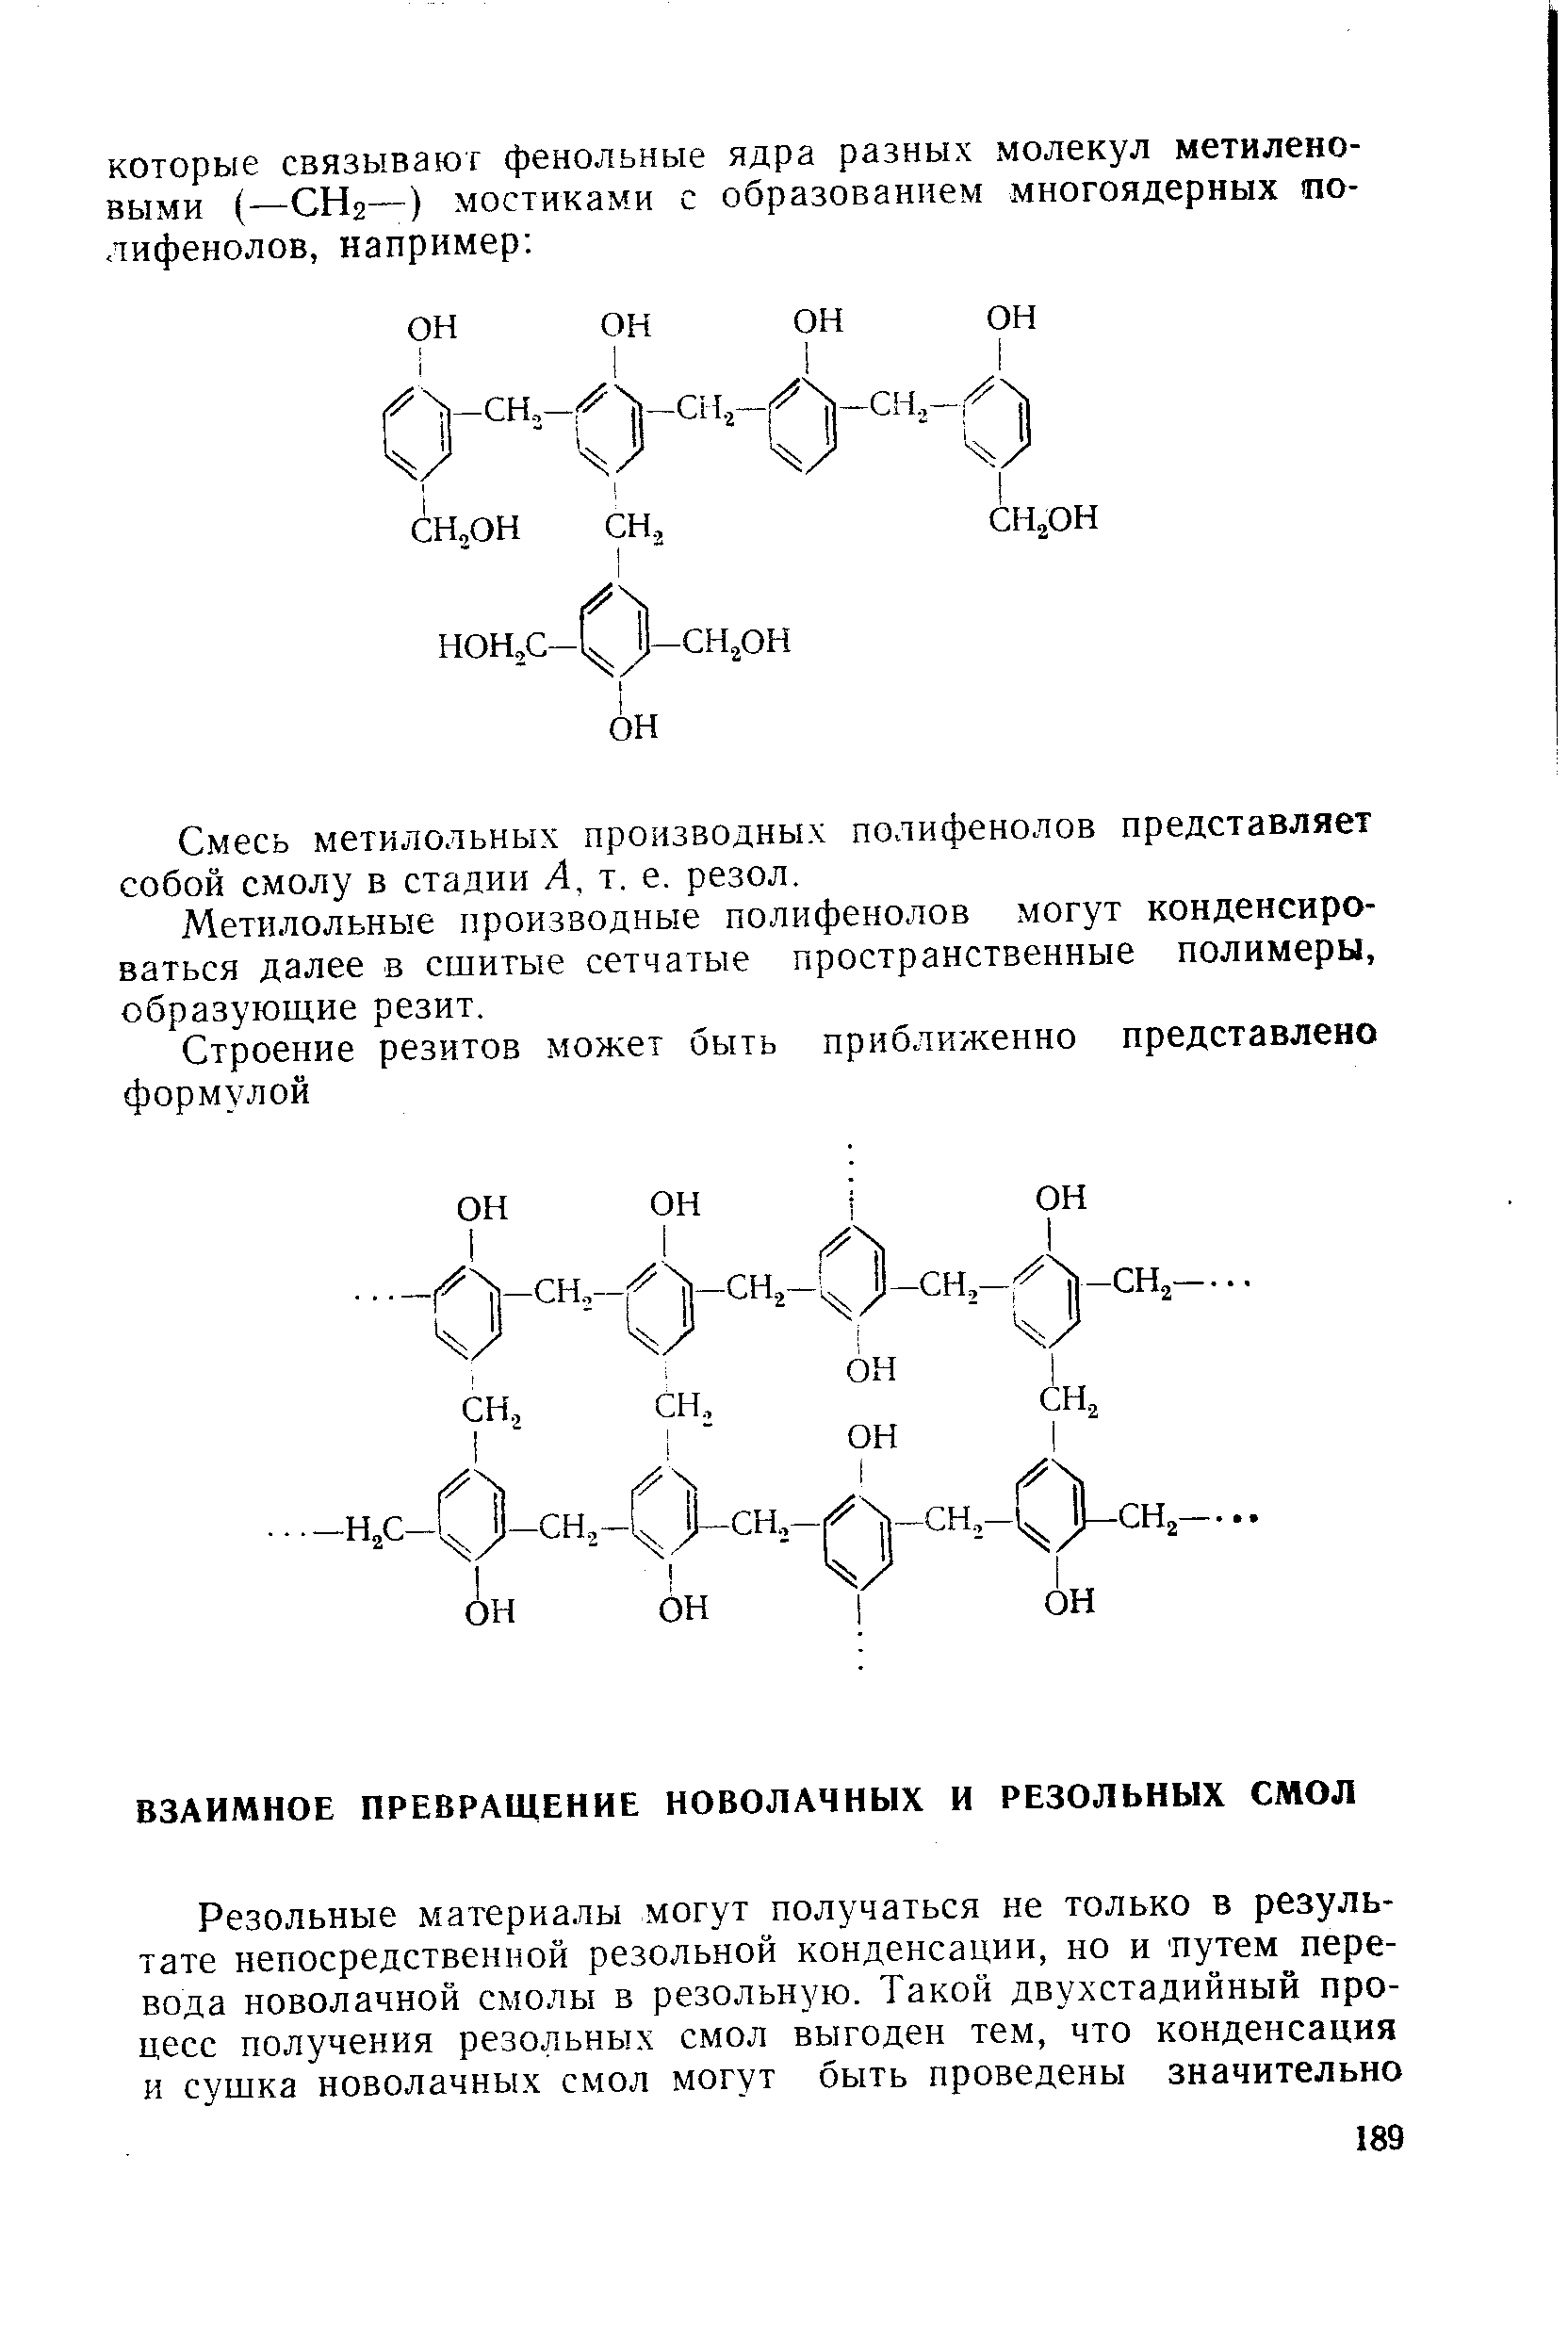 Смесь метилольных производных полифенолов представляет собой смолу в стадии Л, т. е. резол.